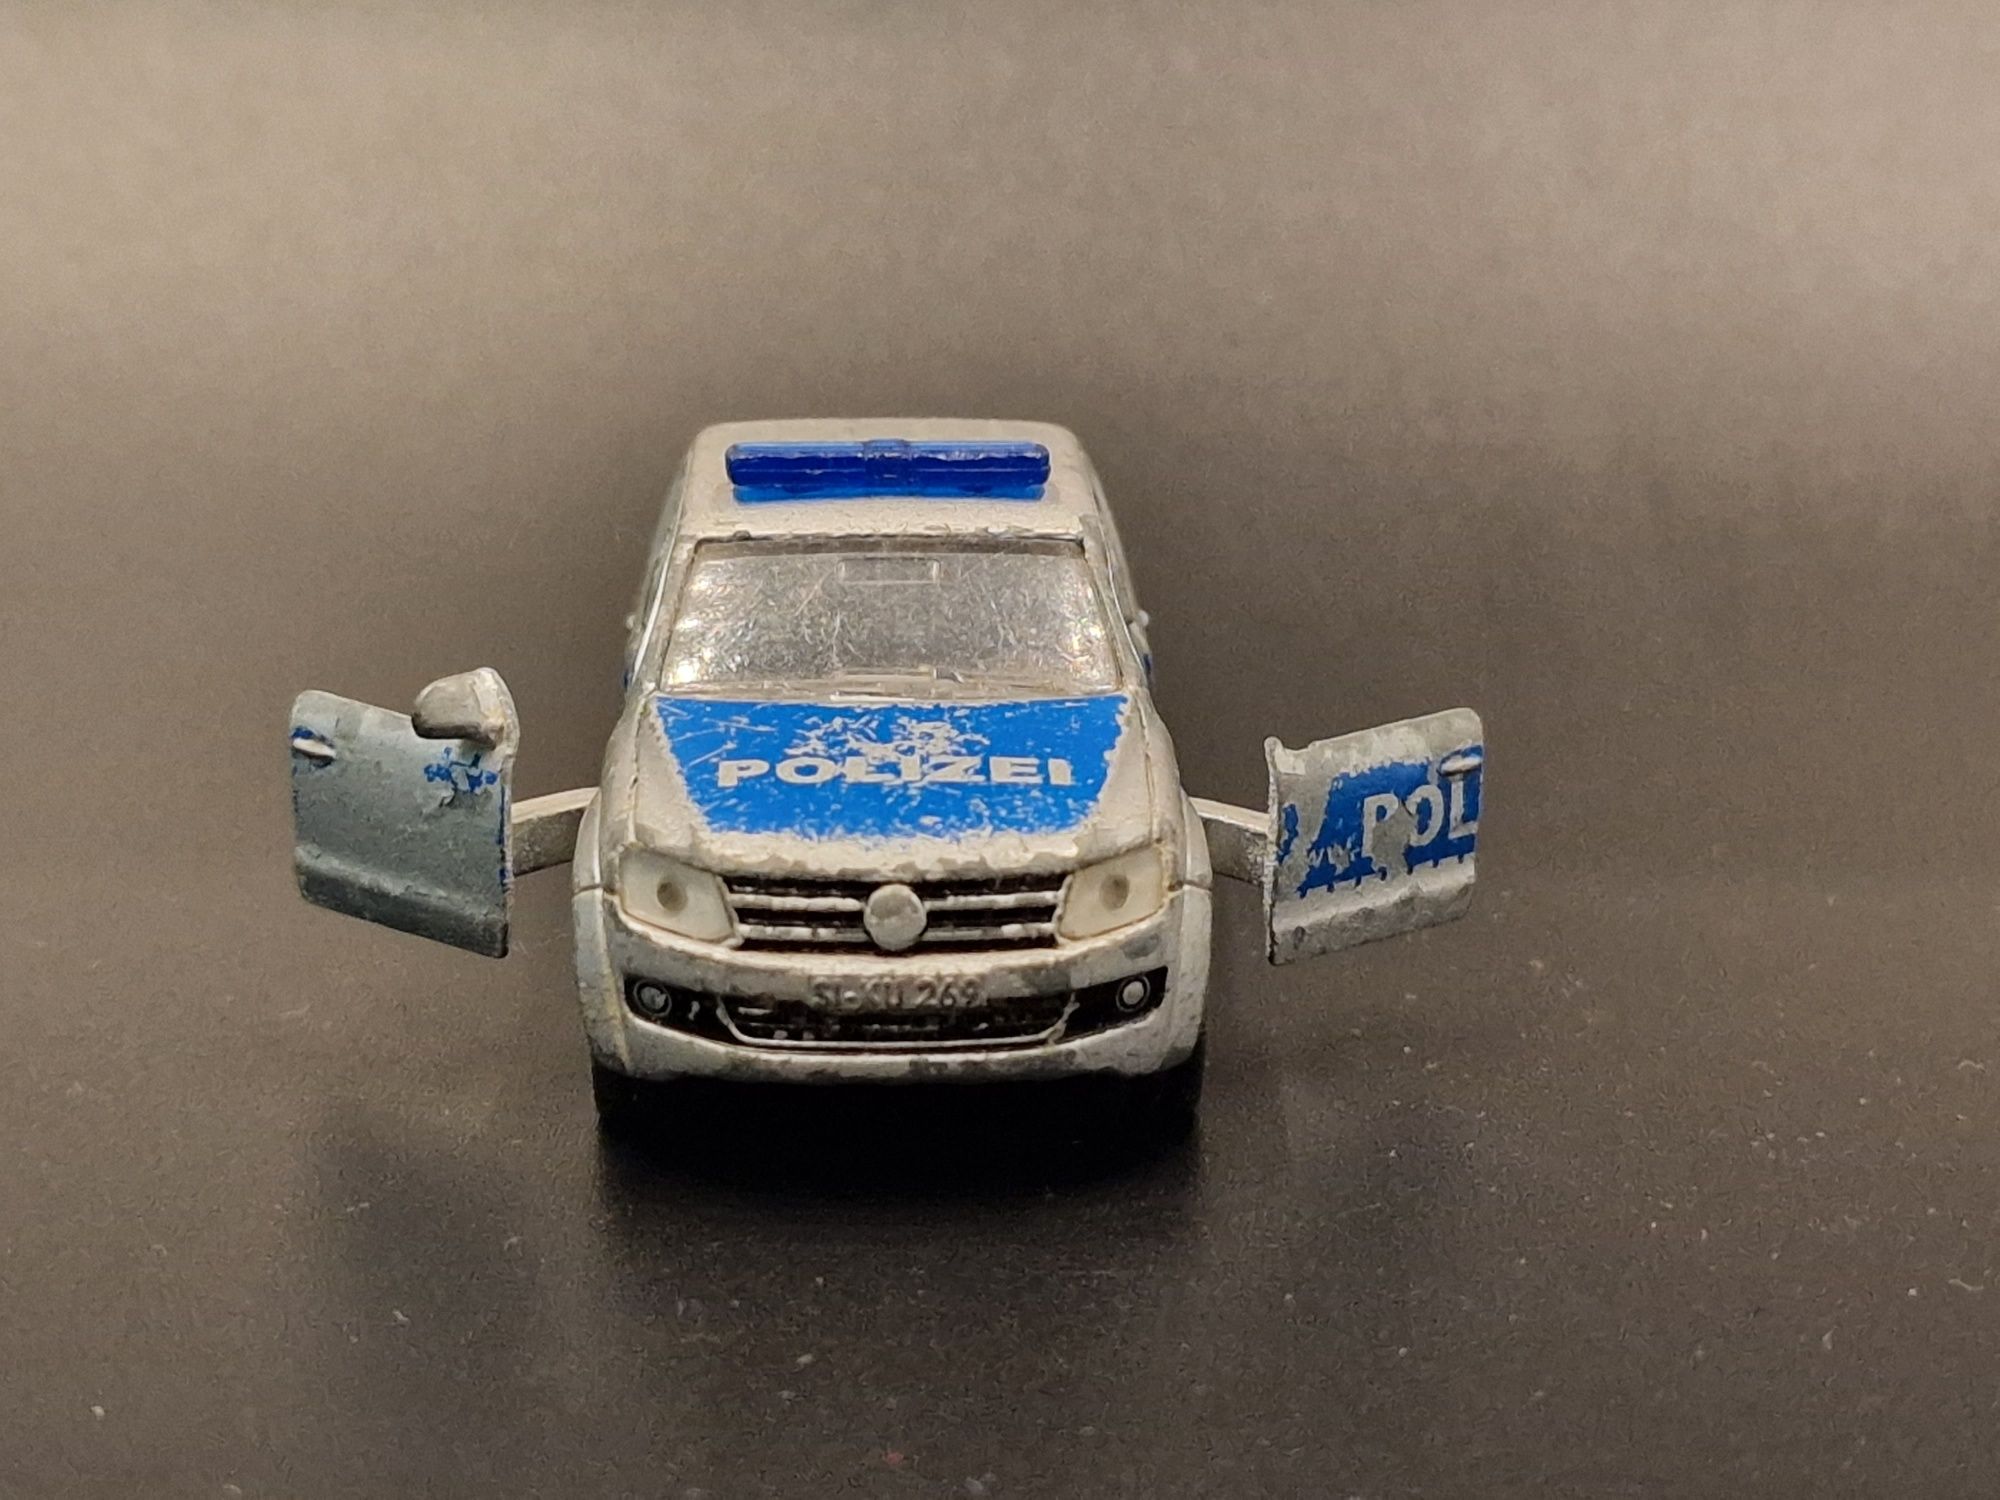 Siku Volkswagen Amarok Policja Polizei